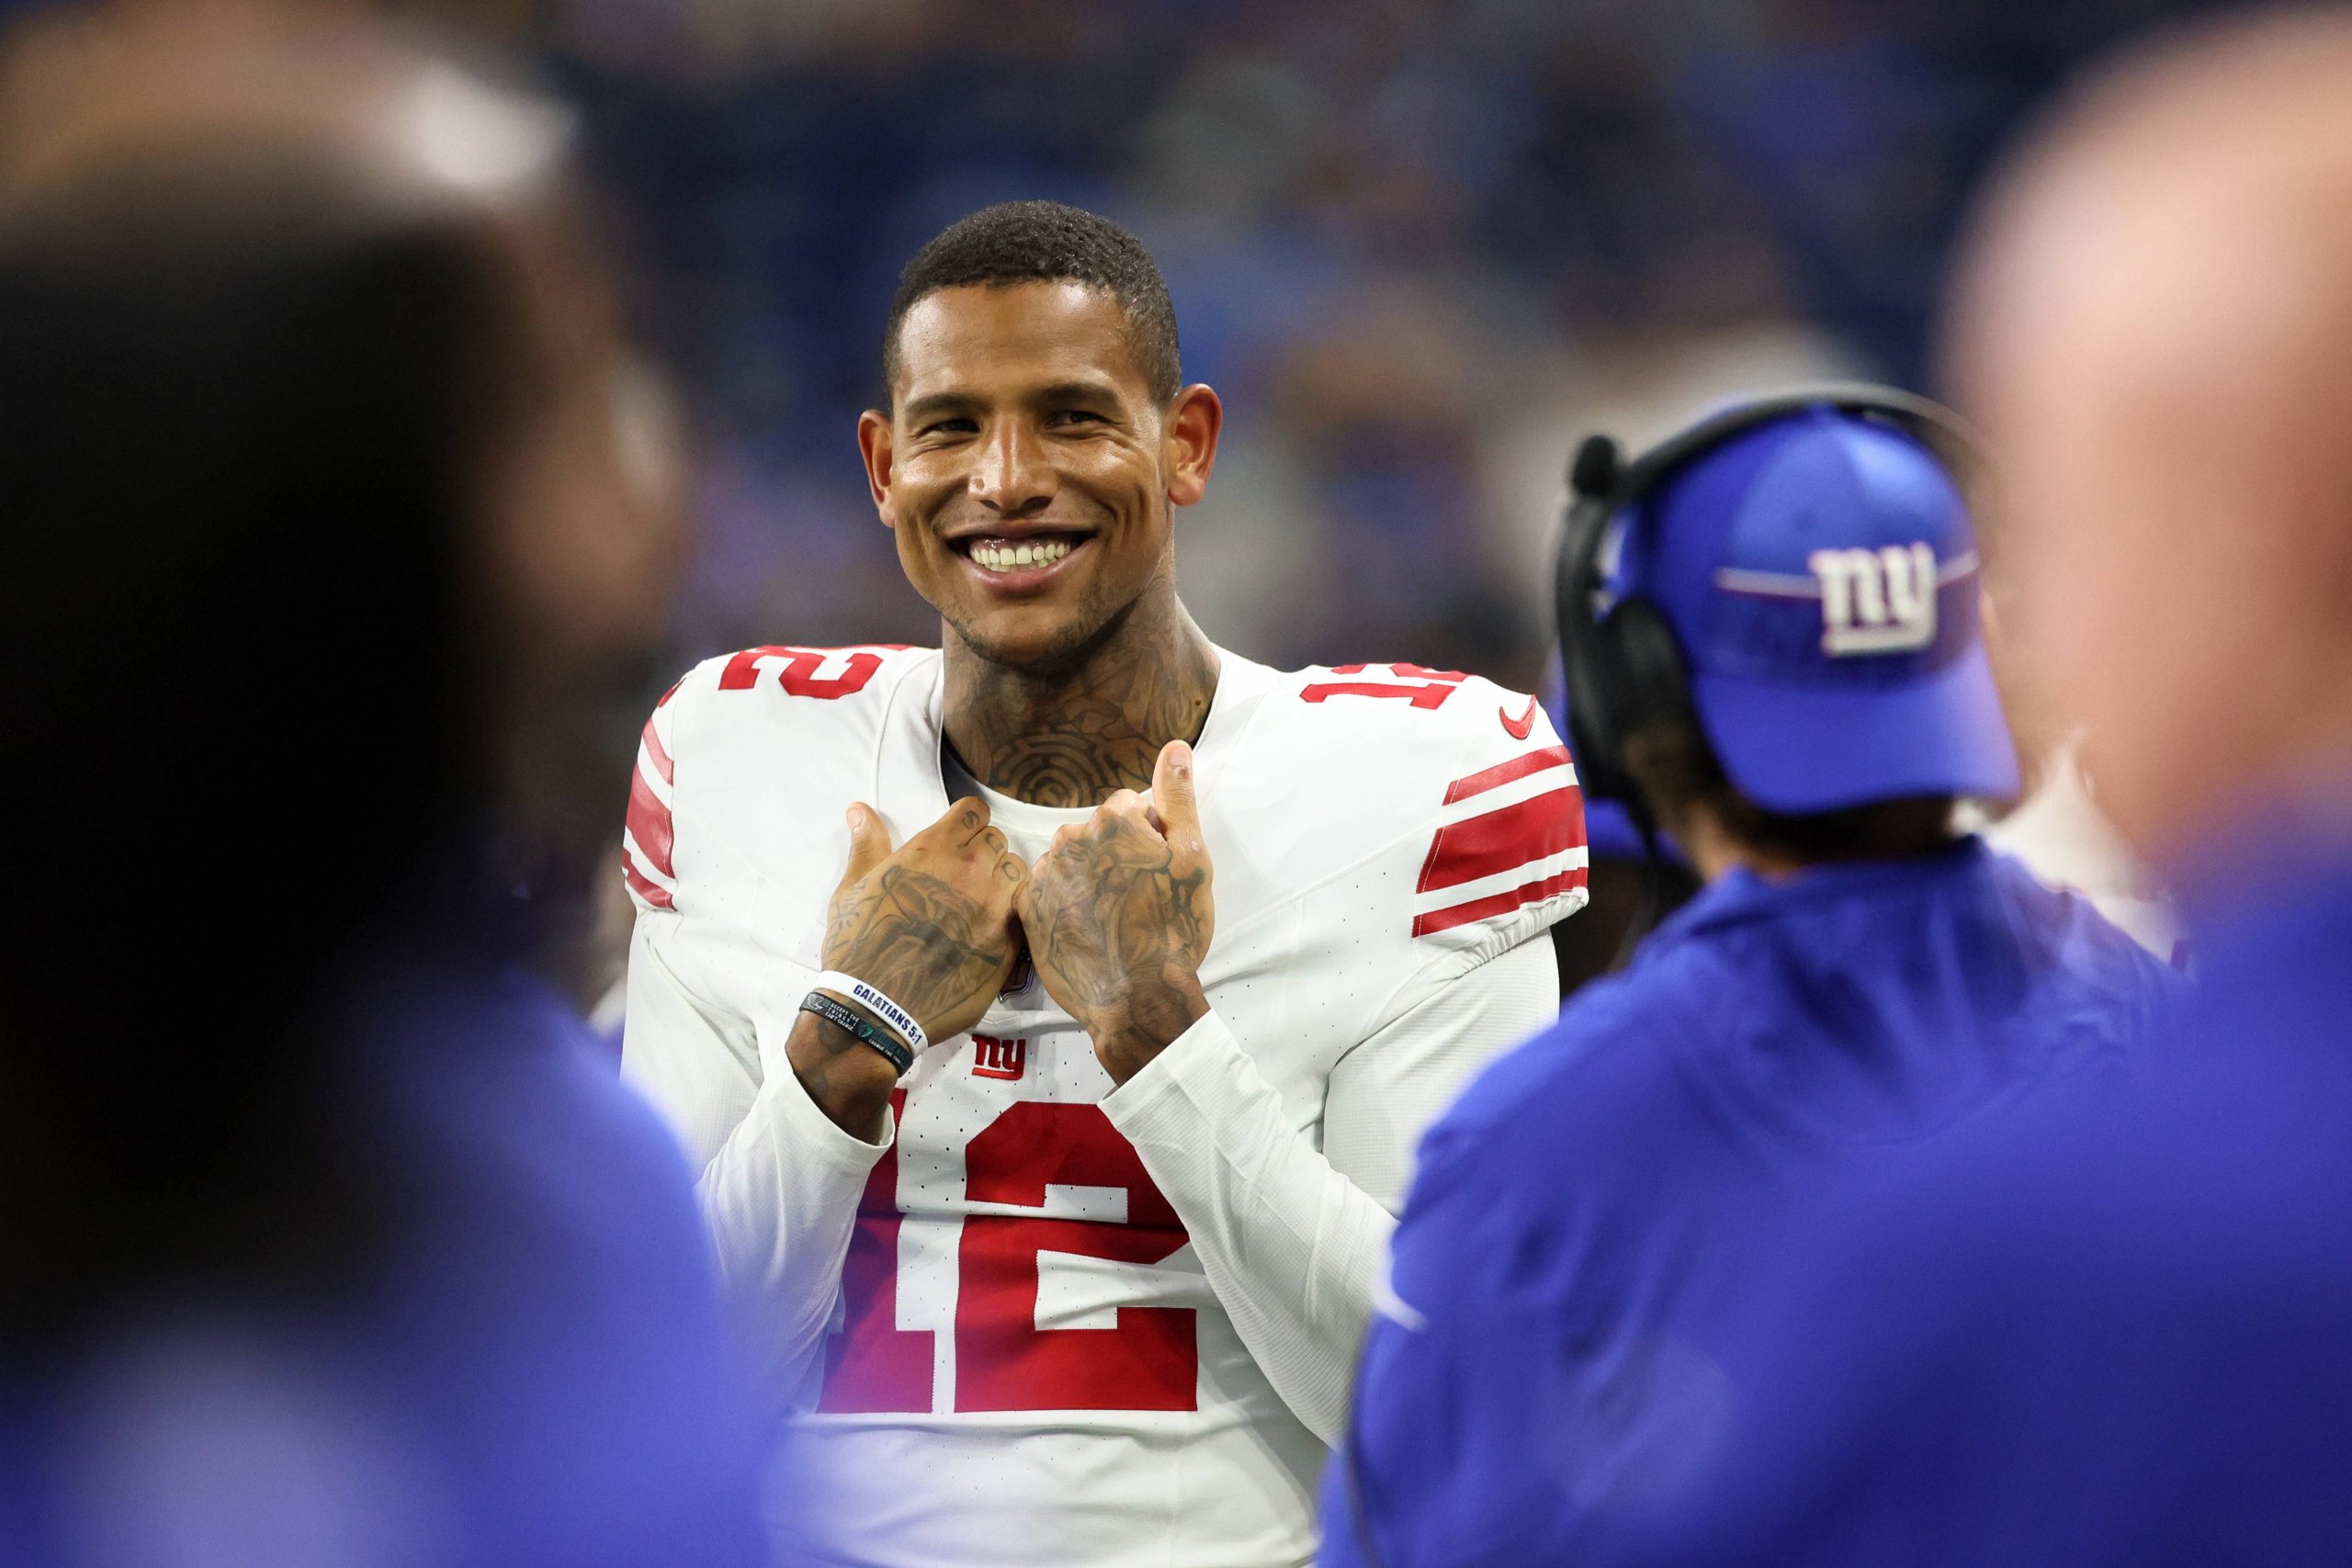 FootballR - NFL - Der Spieler der New York Giants, Darren Waller, lächelt während eines Spiels.